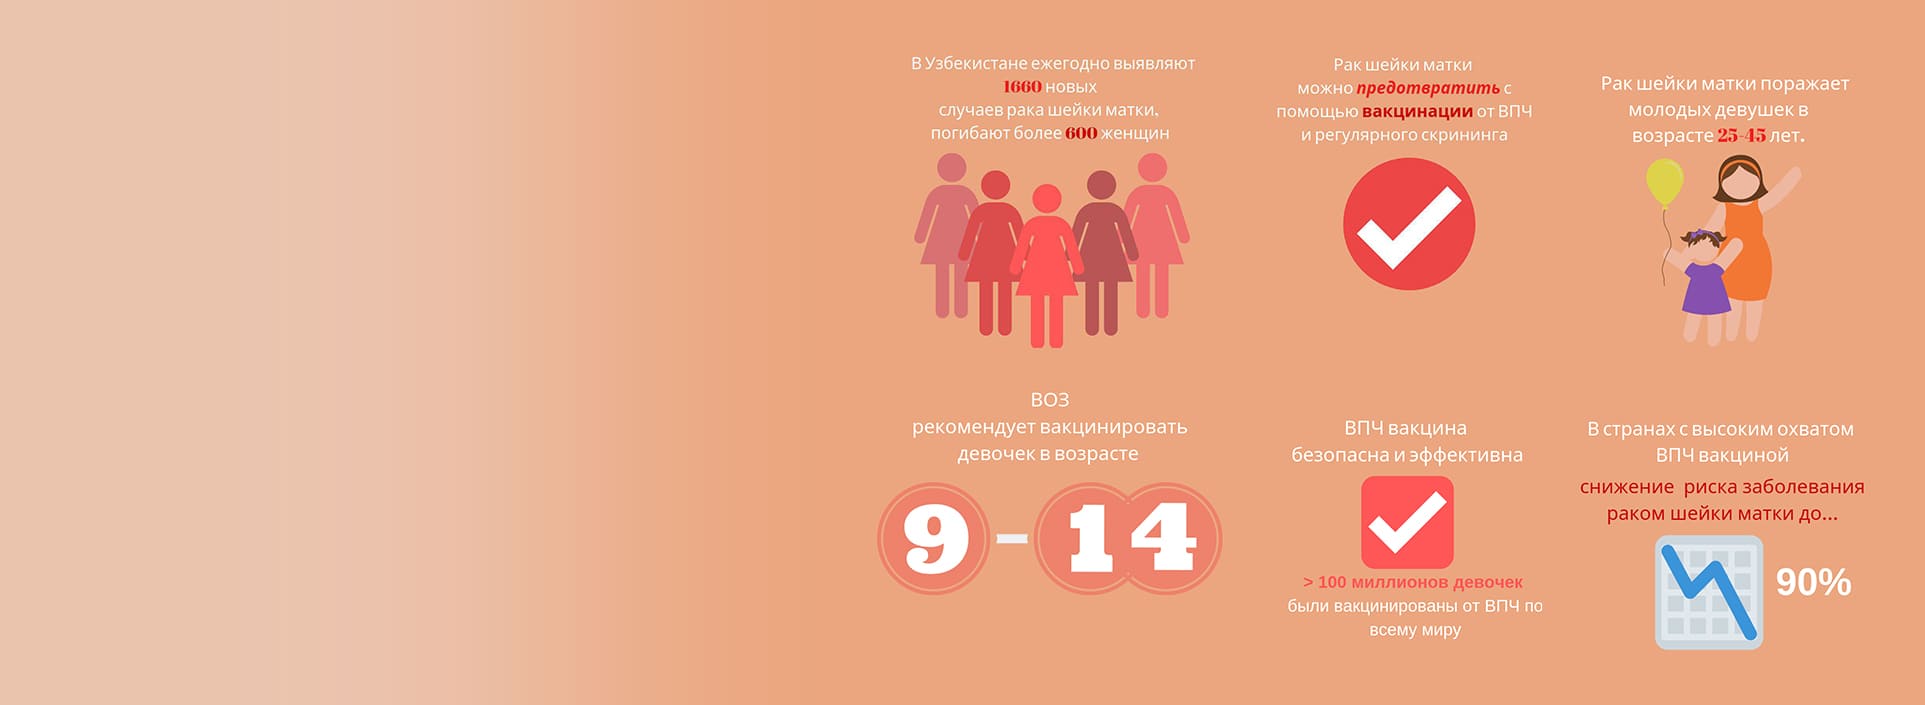 Профилактика рака шейки матки и внедрение ВПЧ вакцины в Узбекистане